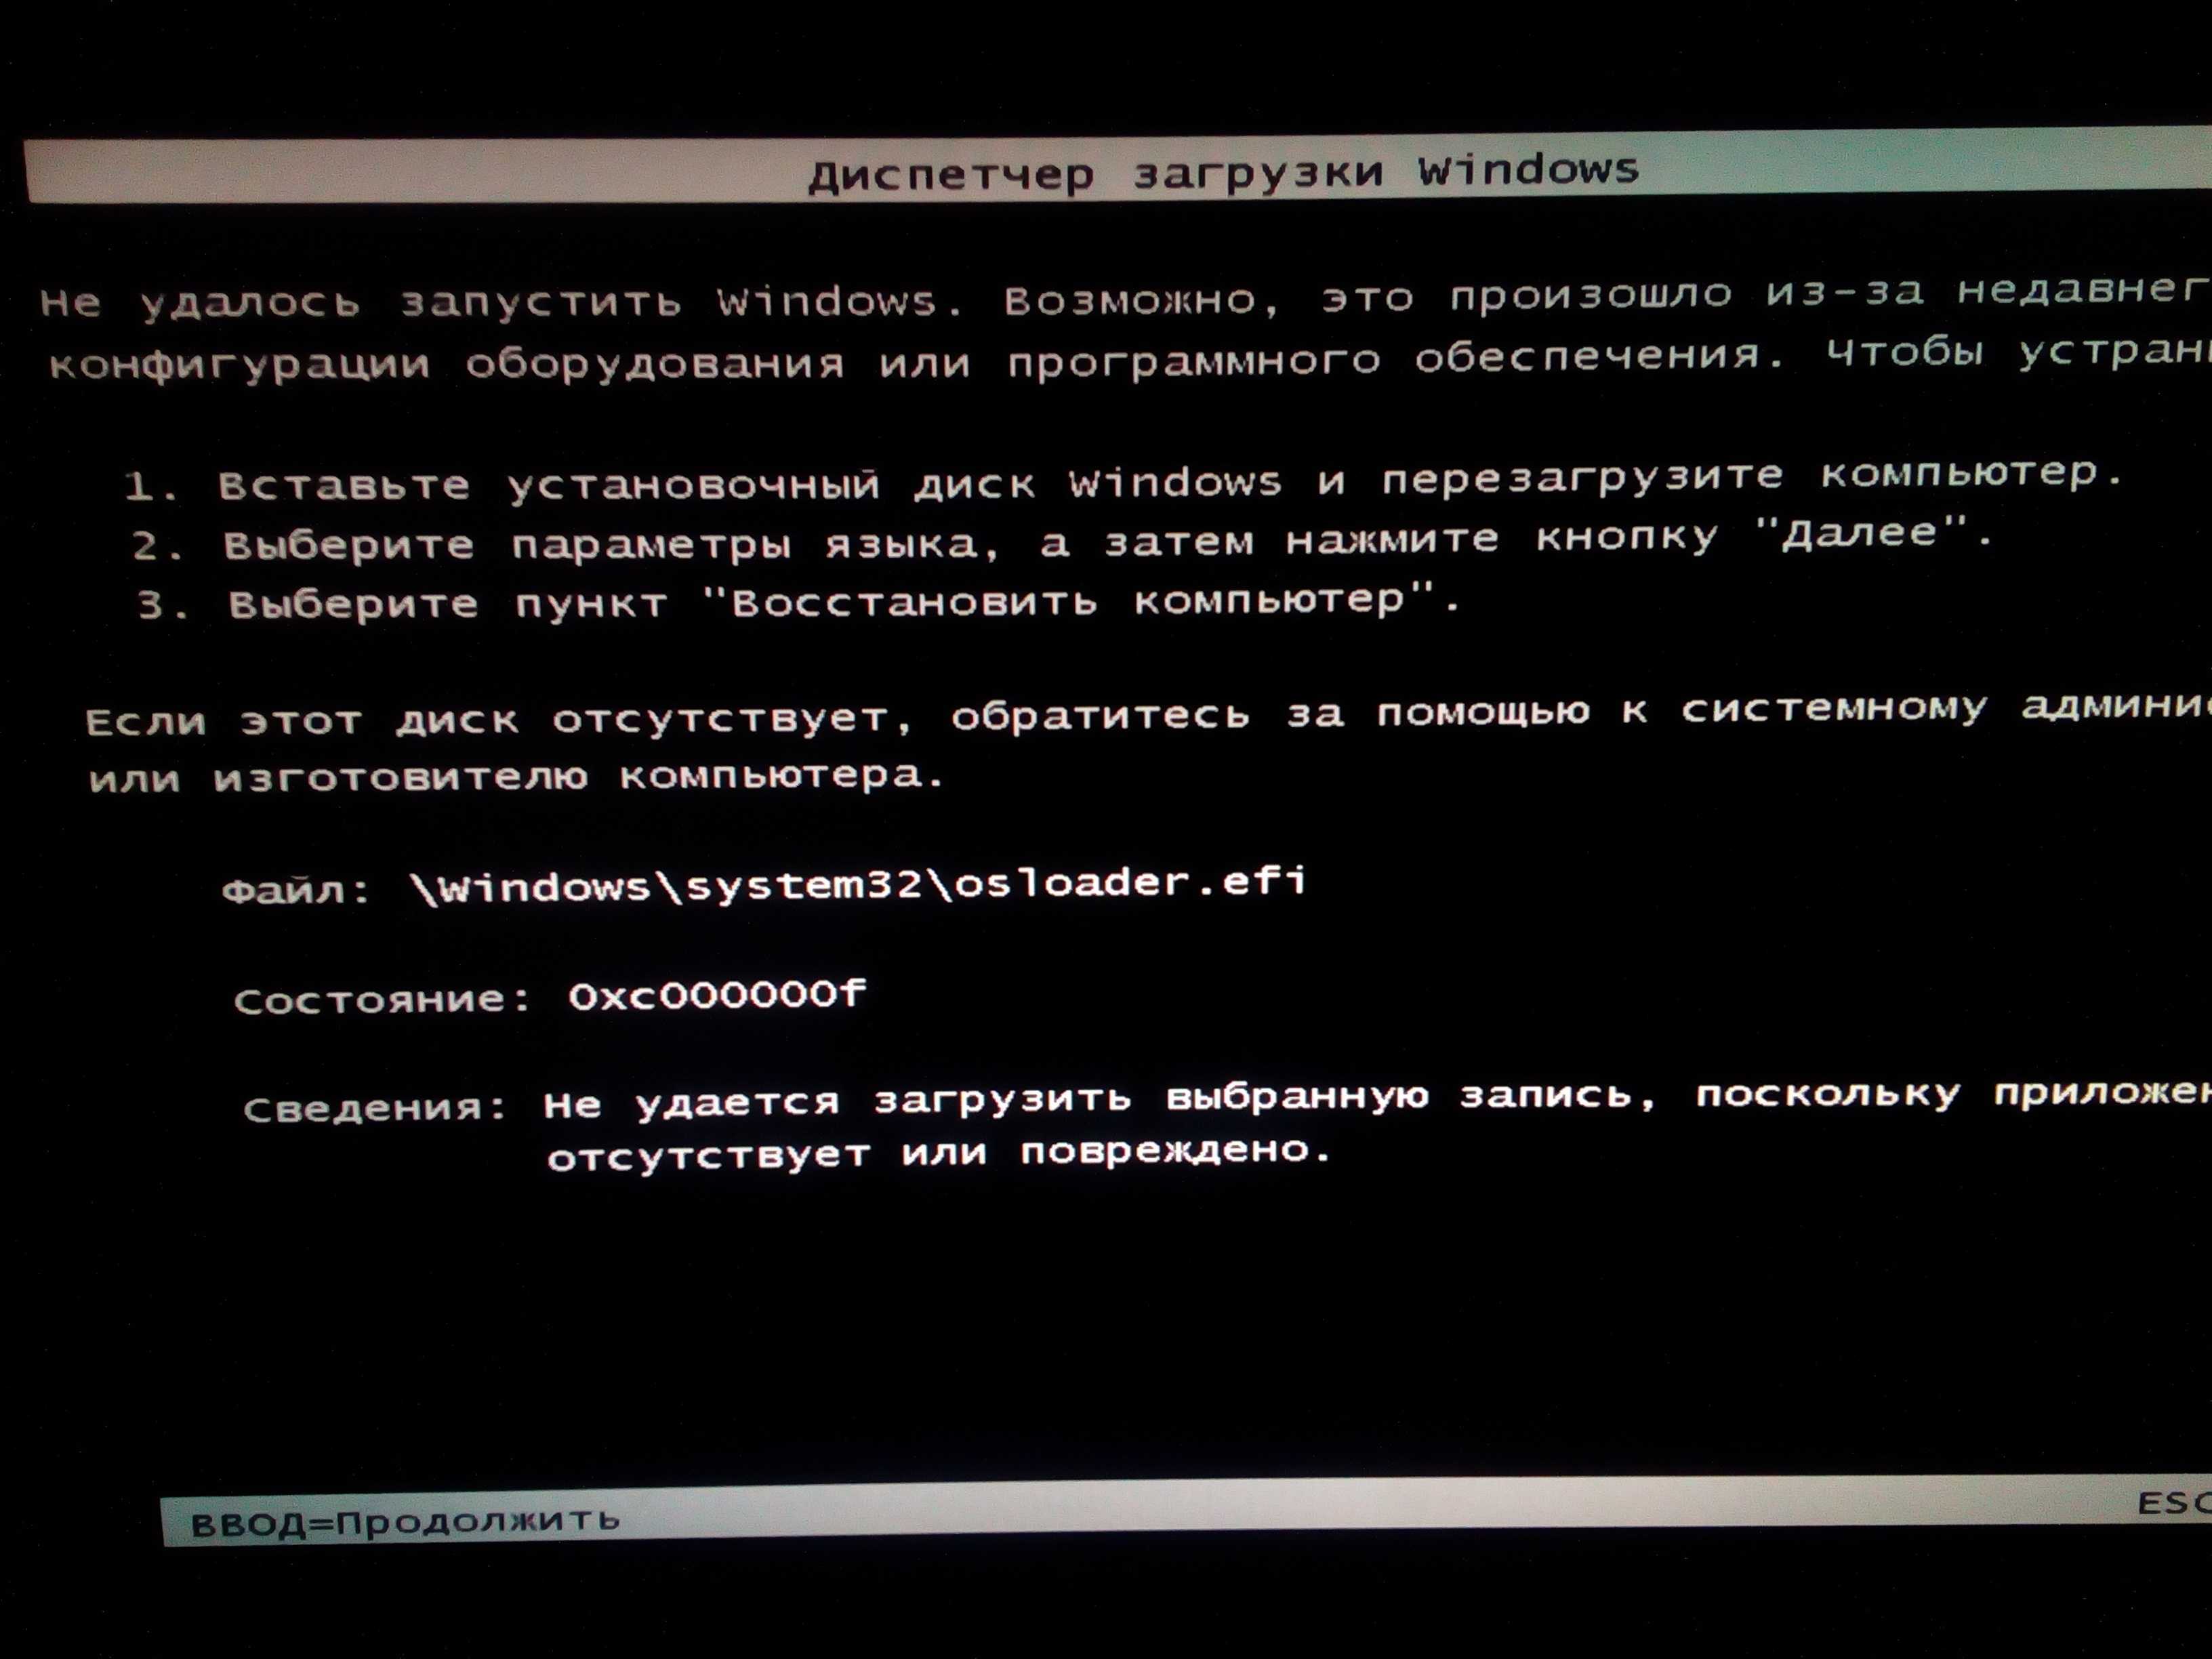 Быстрое решение ошибки "не удается запустить windows из-за испорченного или отсутствующего файла windowssystem32configsystem" в windows xp. - msconfig.ru